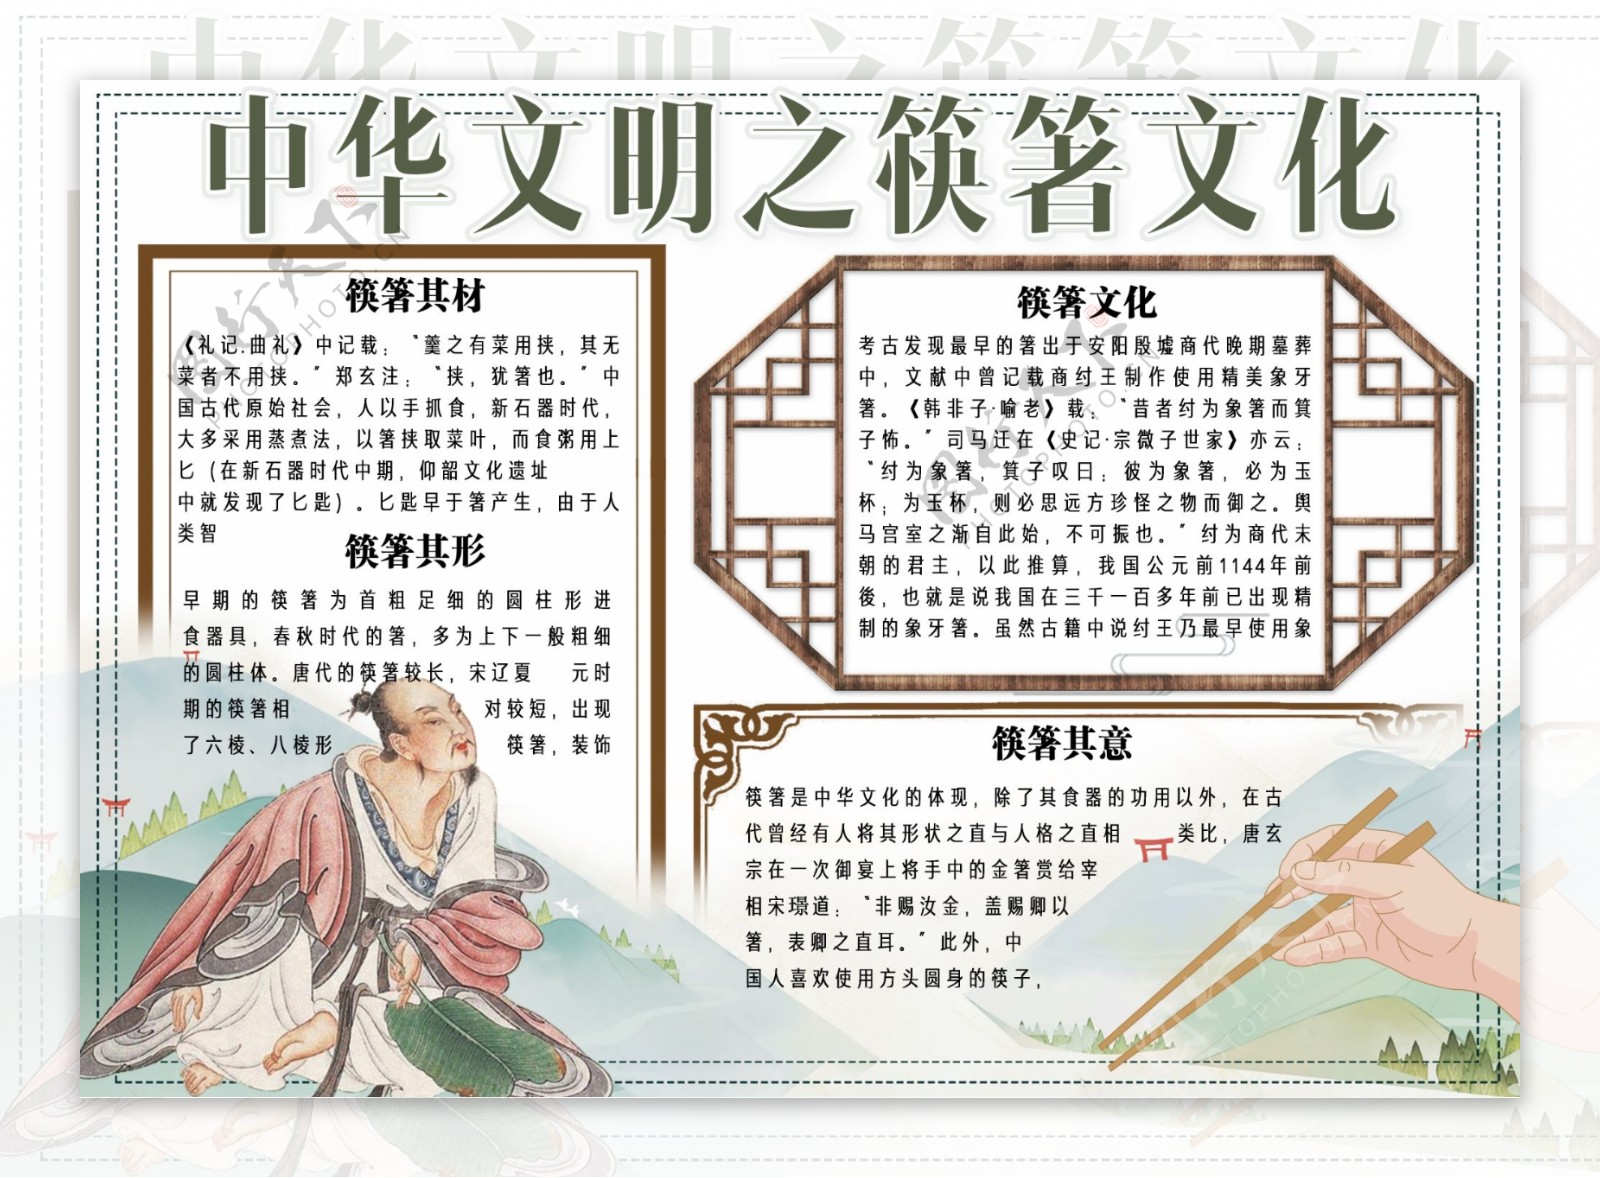 手绘中国风中华文明之筷箸文化手抄报小报电子模板